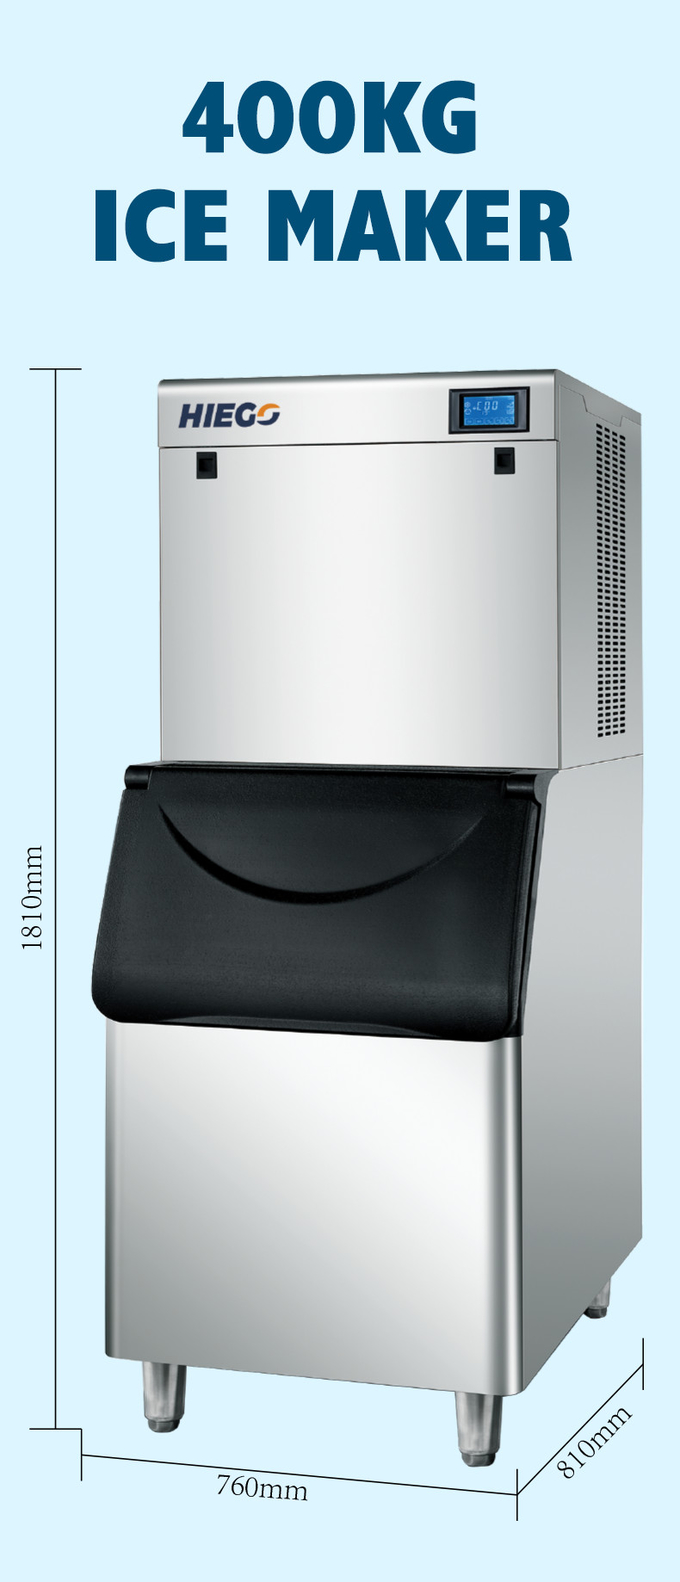 دستگاه یخ ساز تجاری مکعب ساز دستگاه یخ ساز صنعتی با ظرفیت 400 کیلوگرم 6